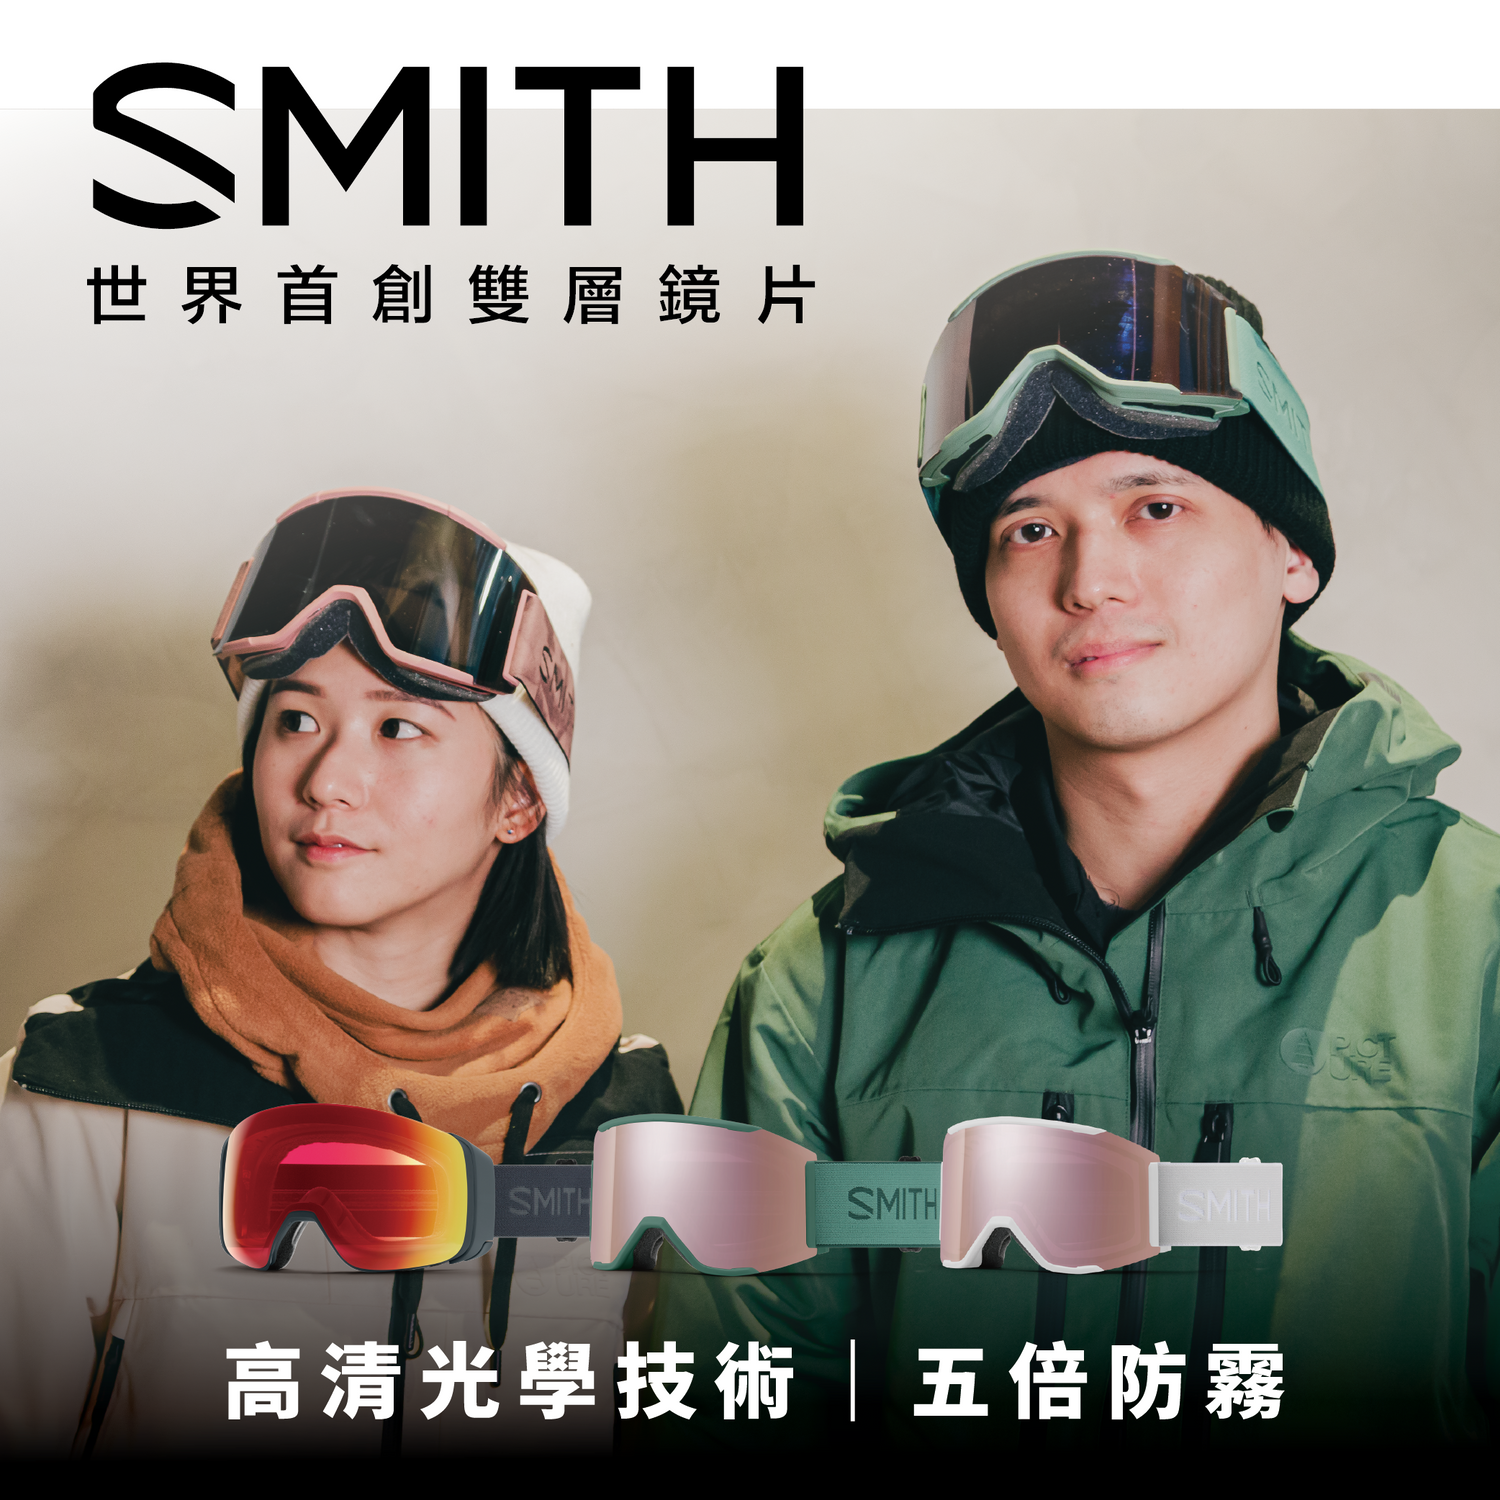 SMITH 世界首創雙層鏡片